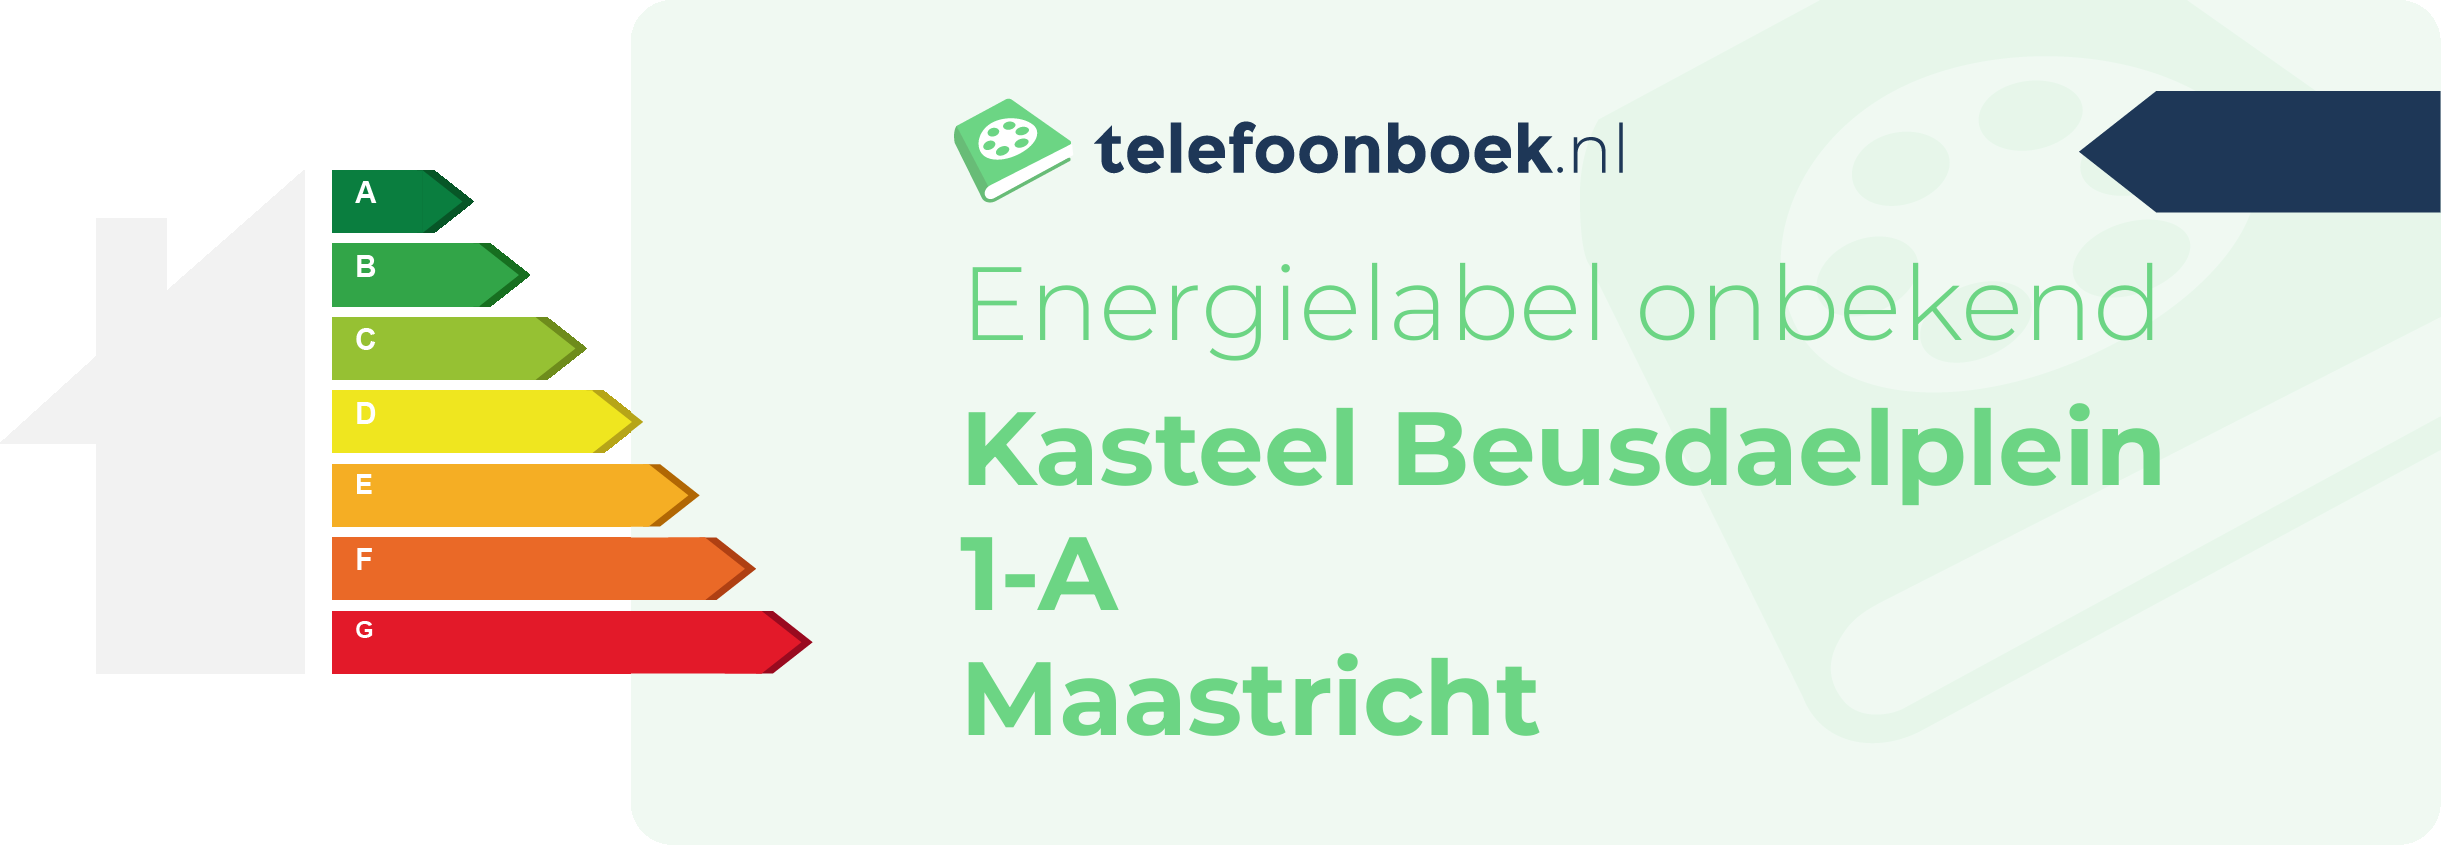 Energielabel Kasteel Beusdaelplein 1-A Maastricht